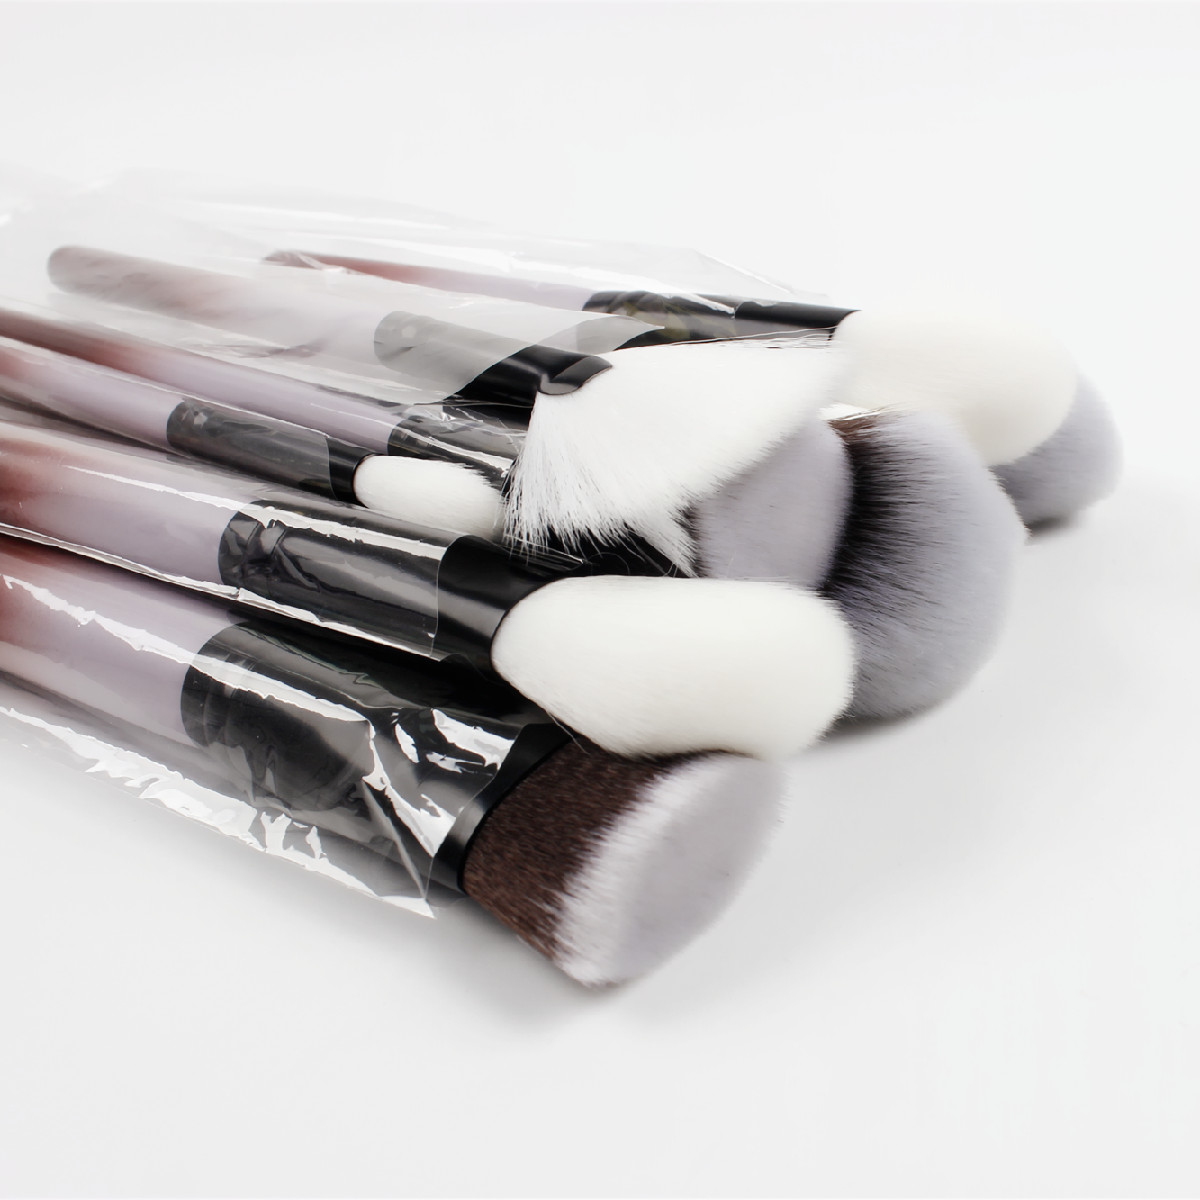 Suprabeauty أحدث تصميم 18 قطعة مجموعة فرش مكياج العيون مجموعة فرش ظلال العيون أدوات التجميل رائجة البيع